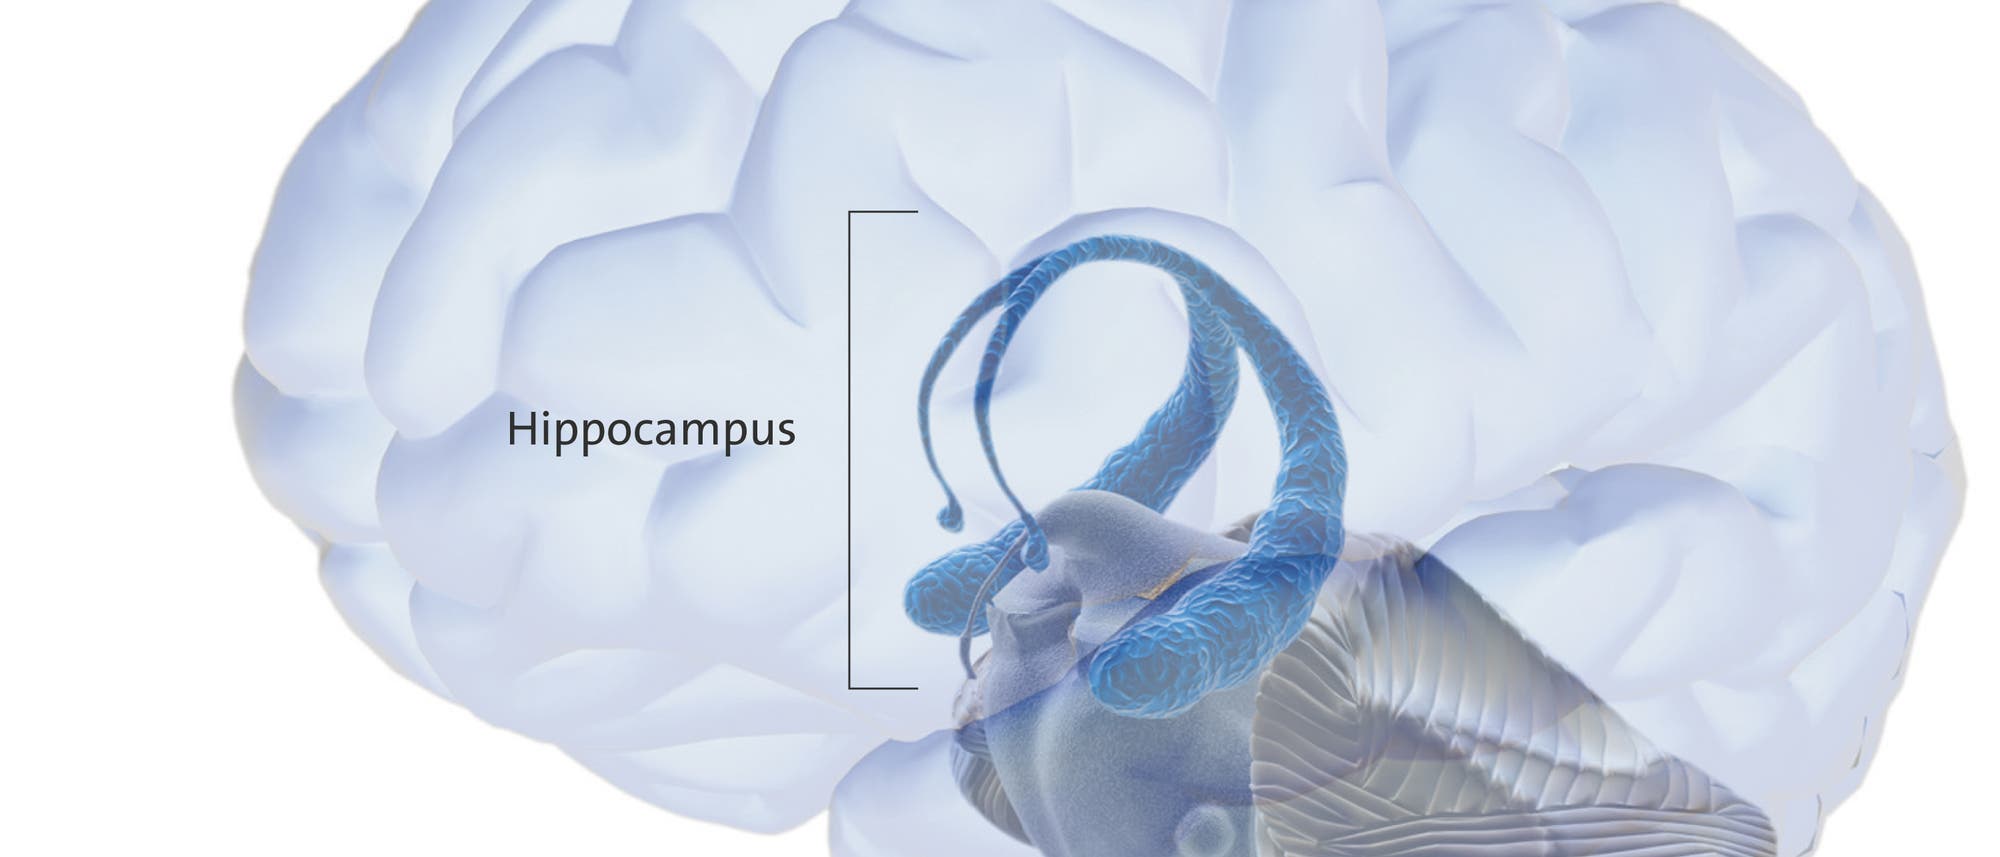 Der Hippocampus